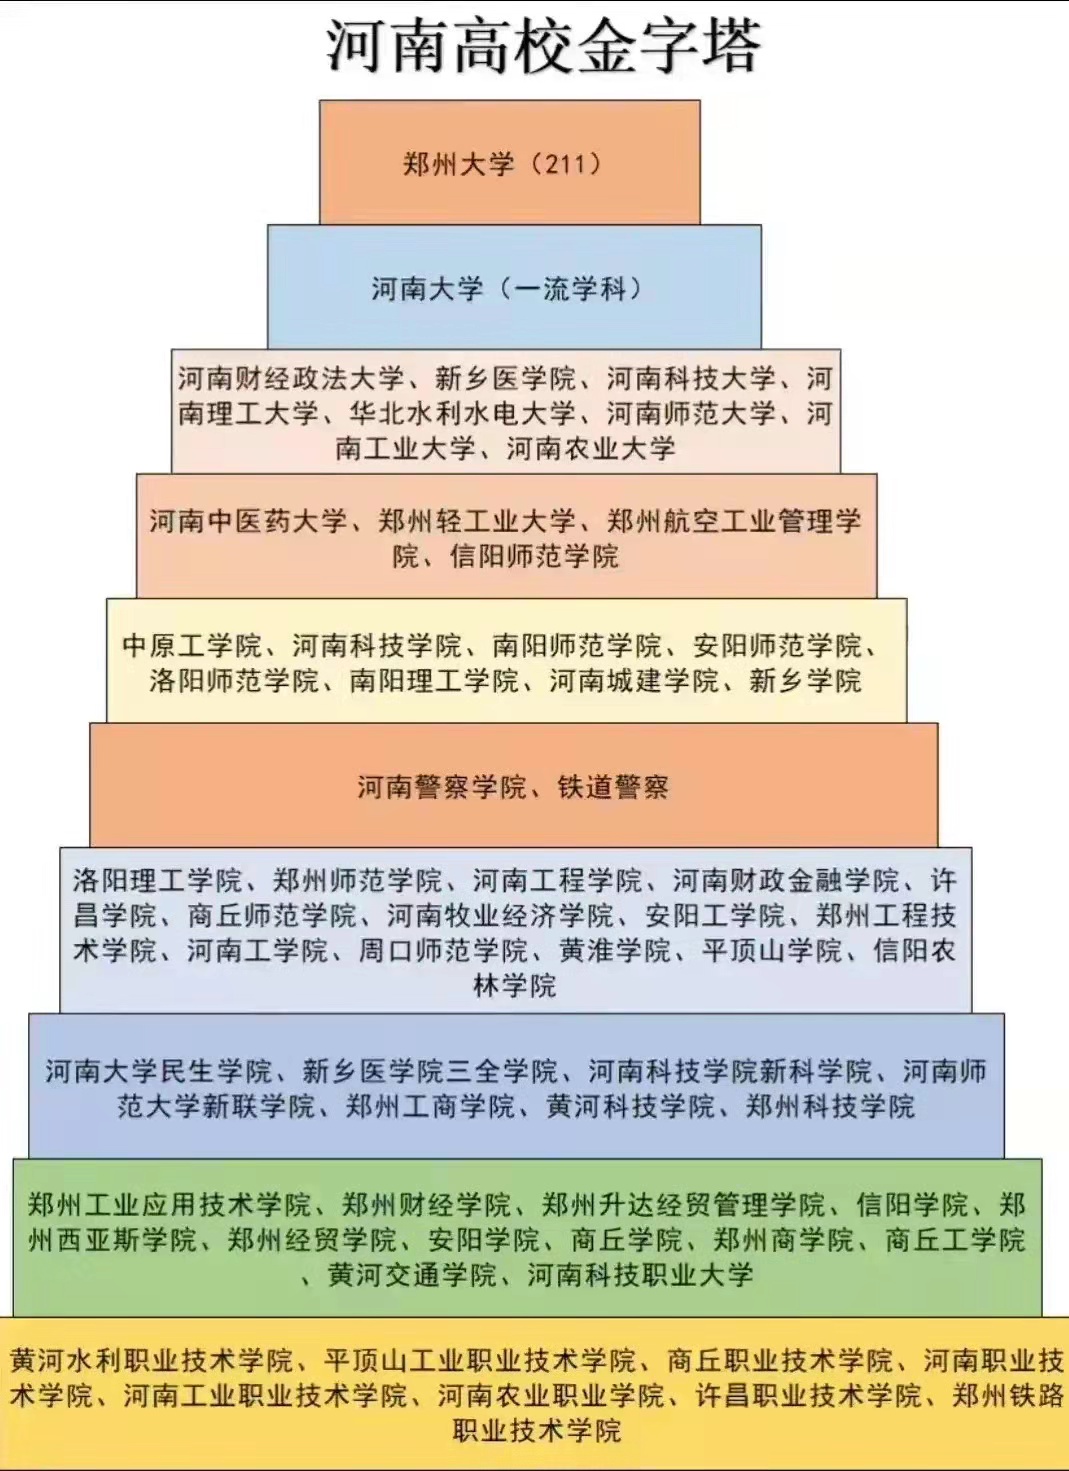 四川高校金字塔图图片